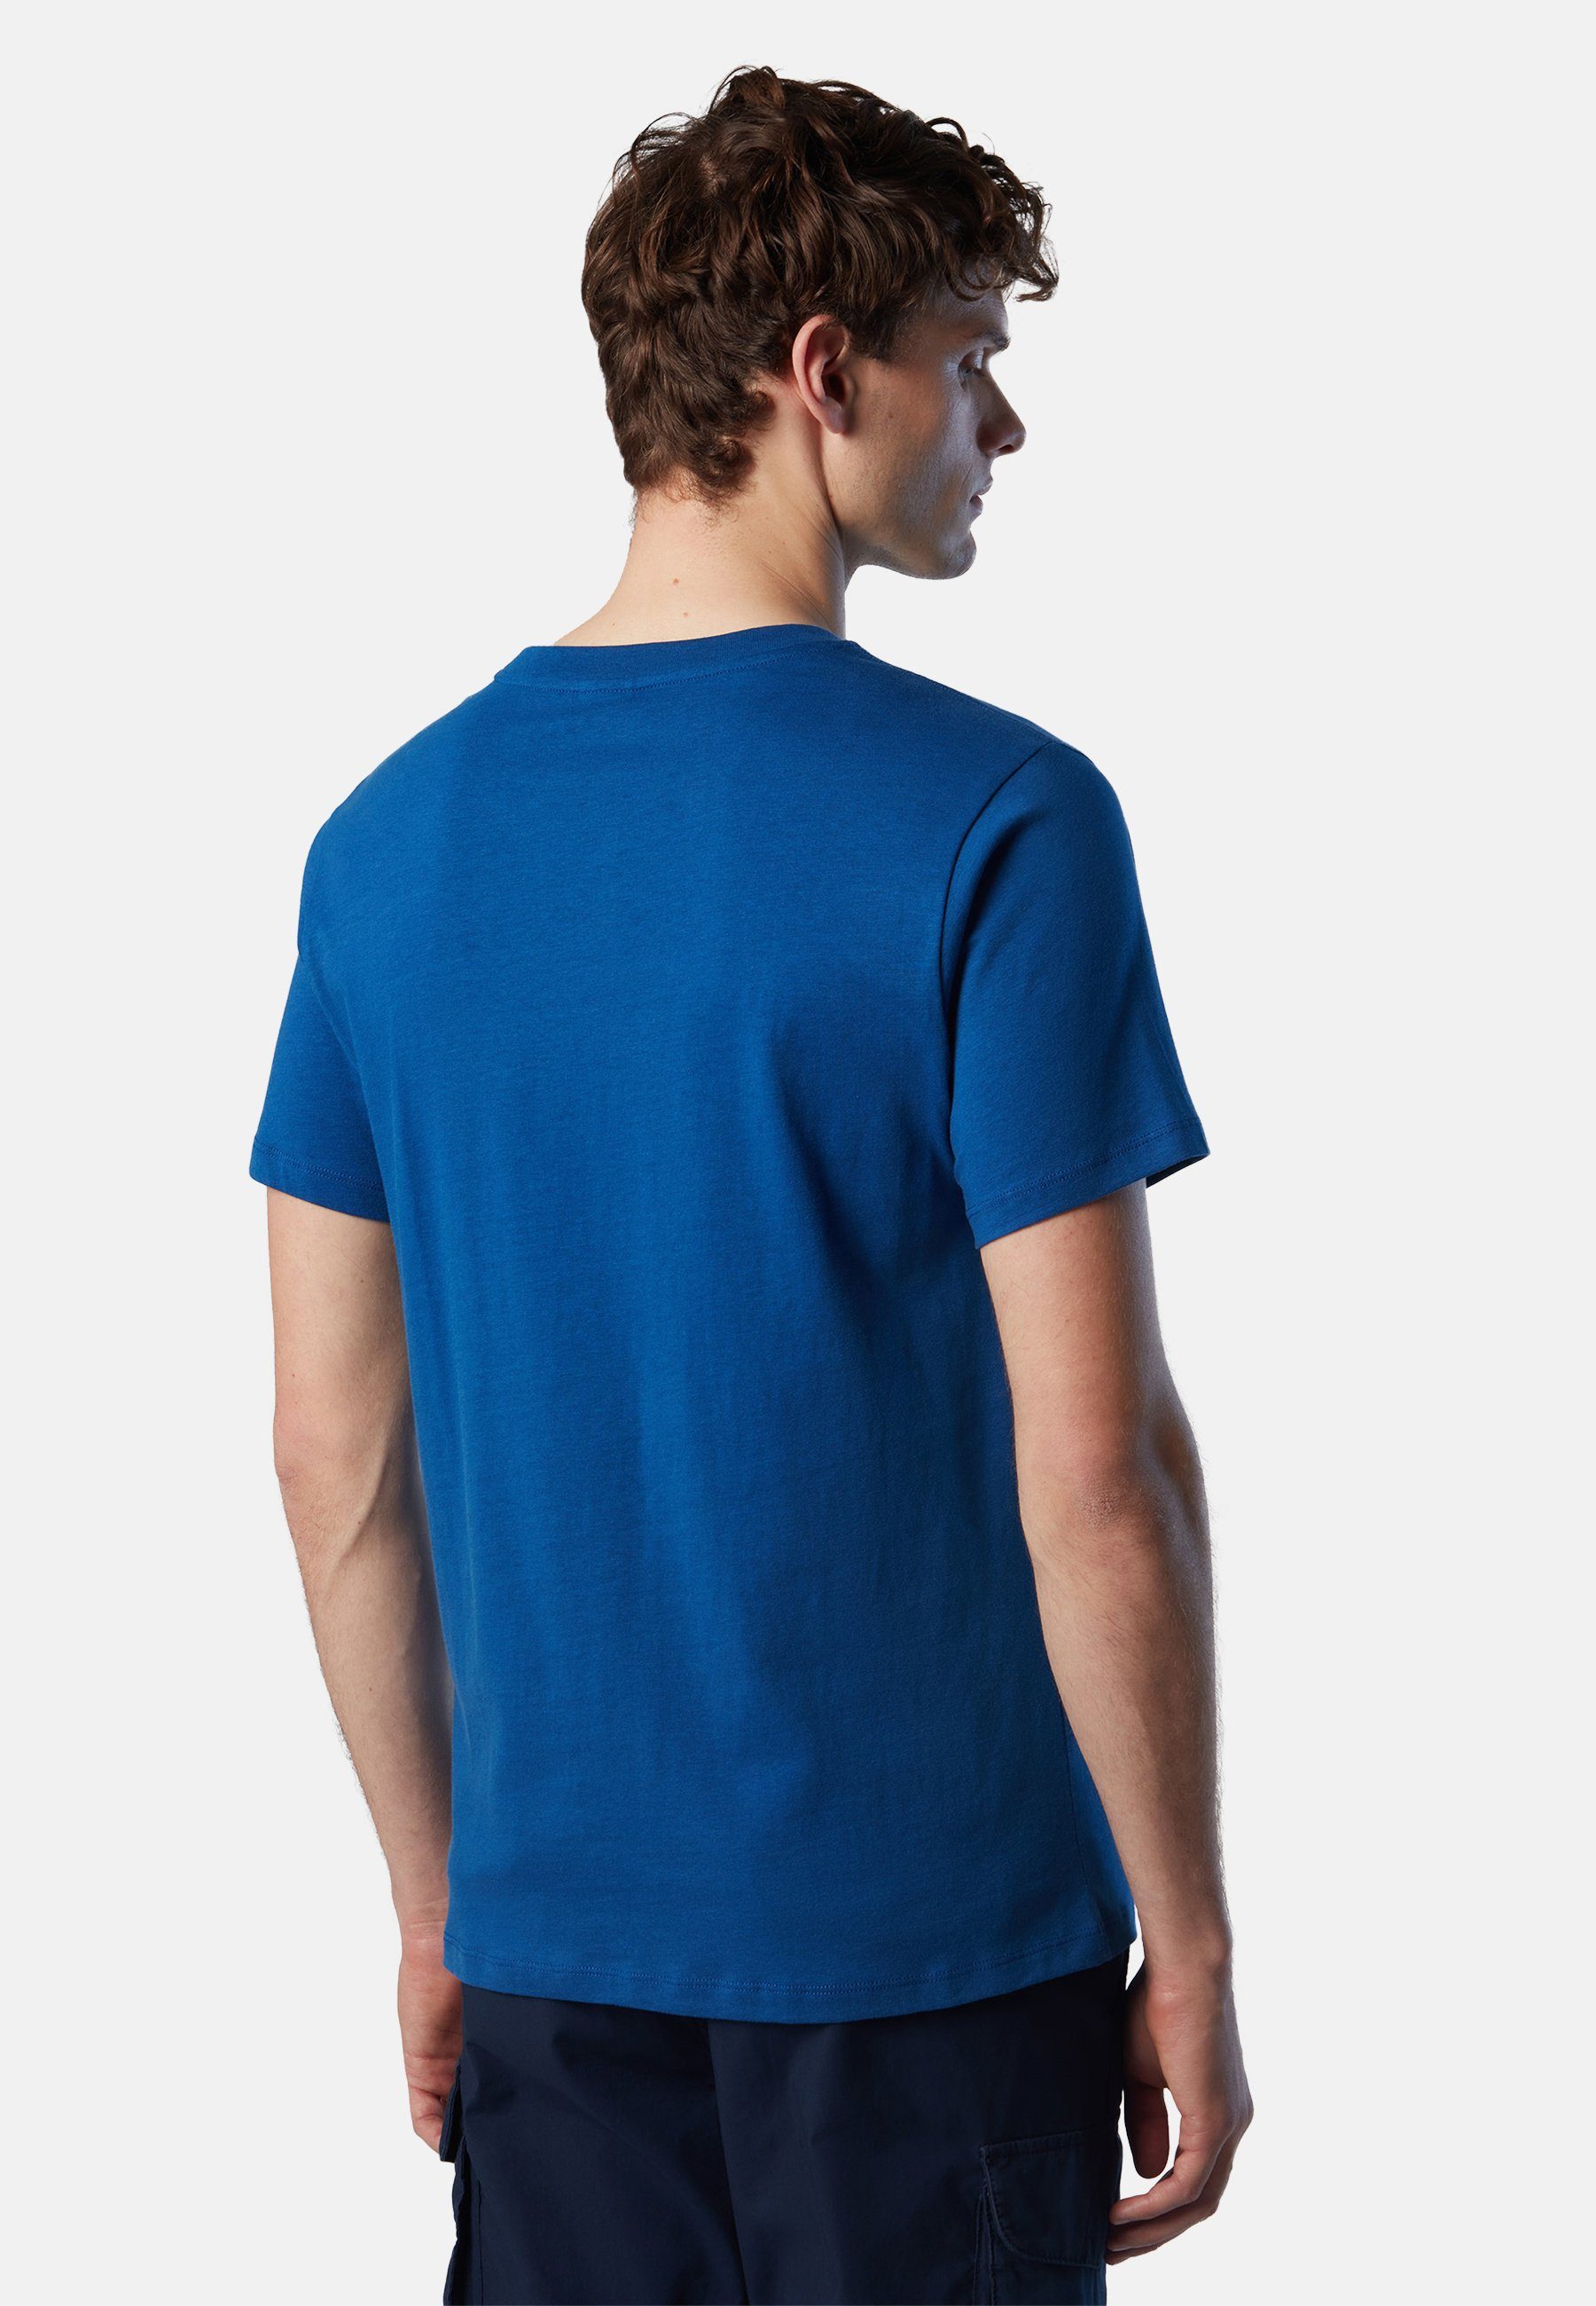 Maxi-Logo-Aufdruck mit T-Shirt klassischem Sails BLUE mit Design T-Shirt North BRIGHT